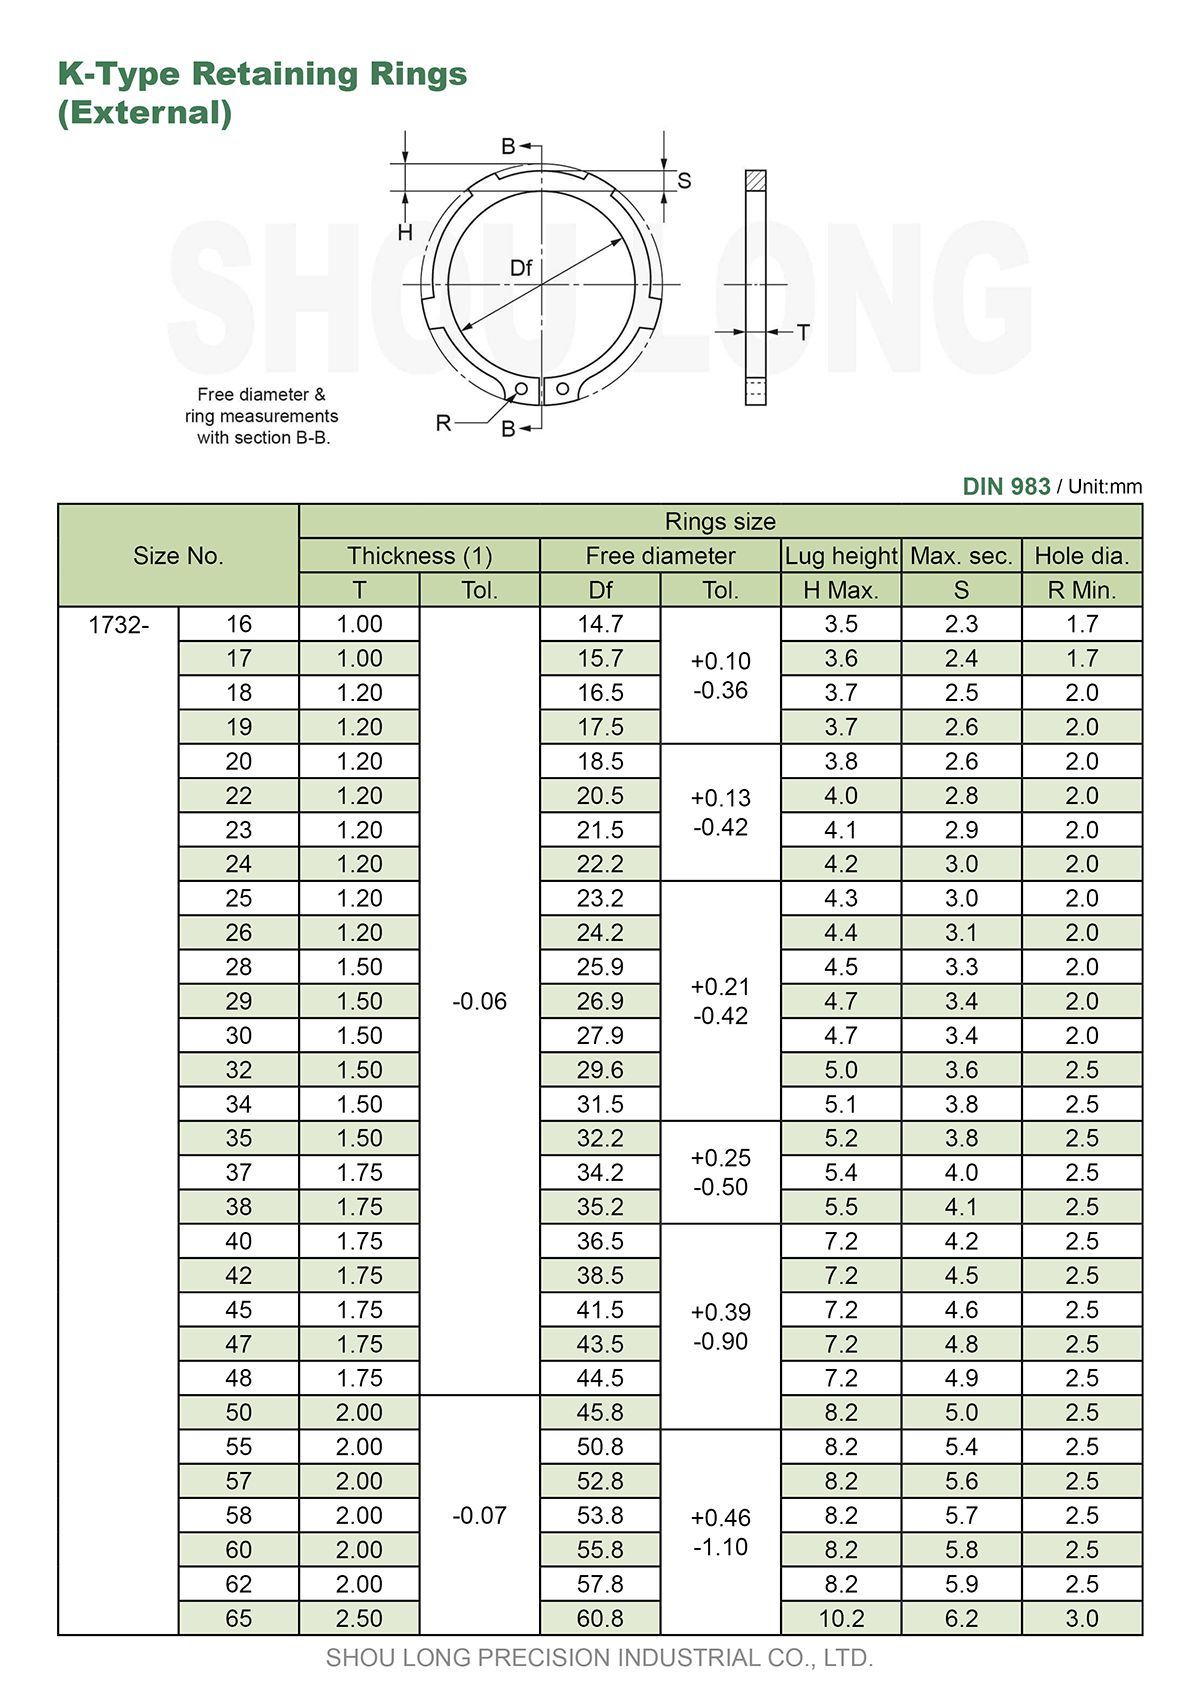 ข้อมูลของแหวนรัดประเภท K ขนาดเมตรสำหรับแกน DIN983-1